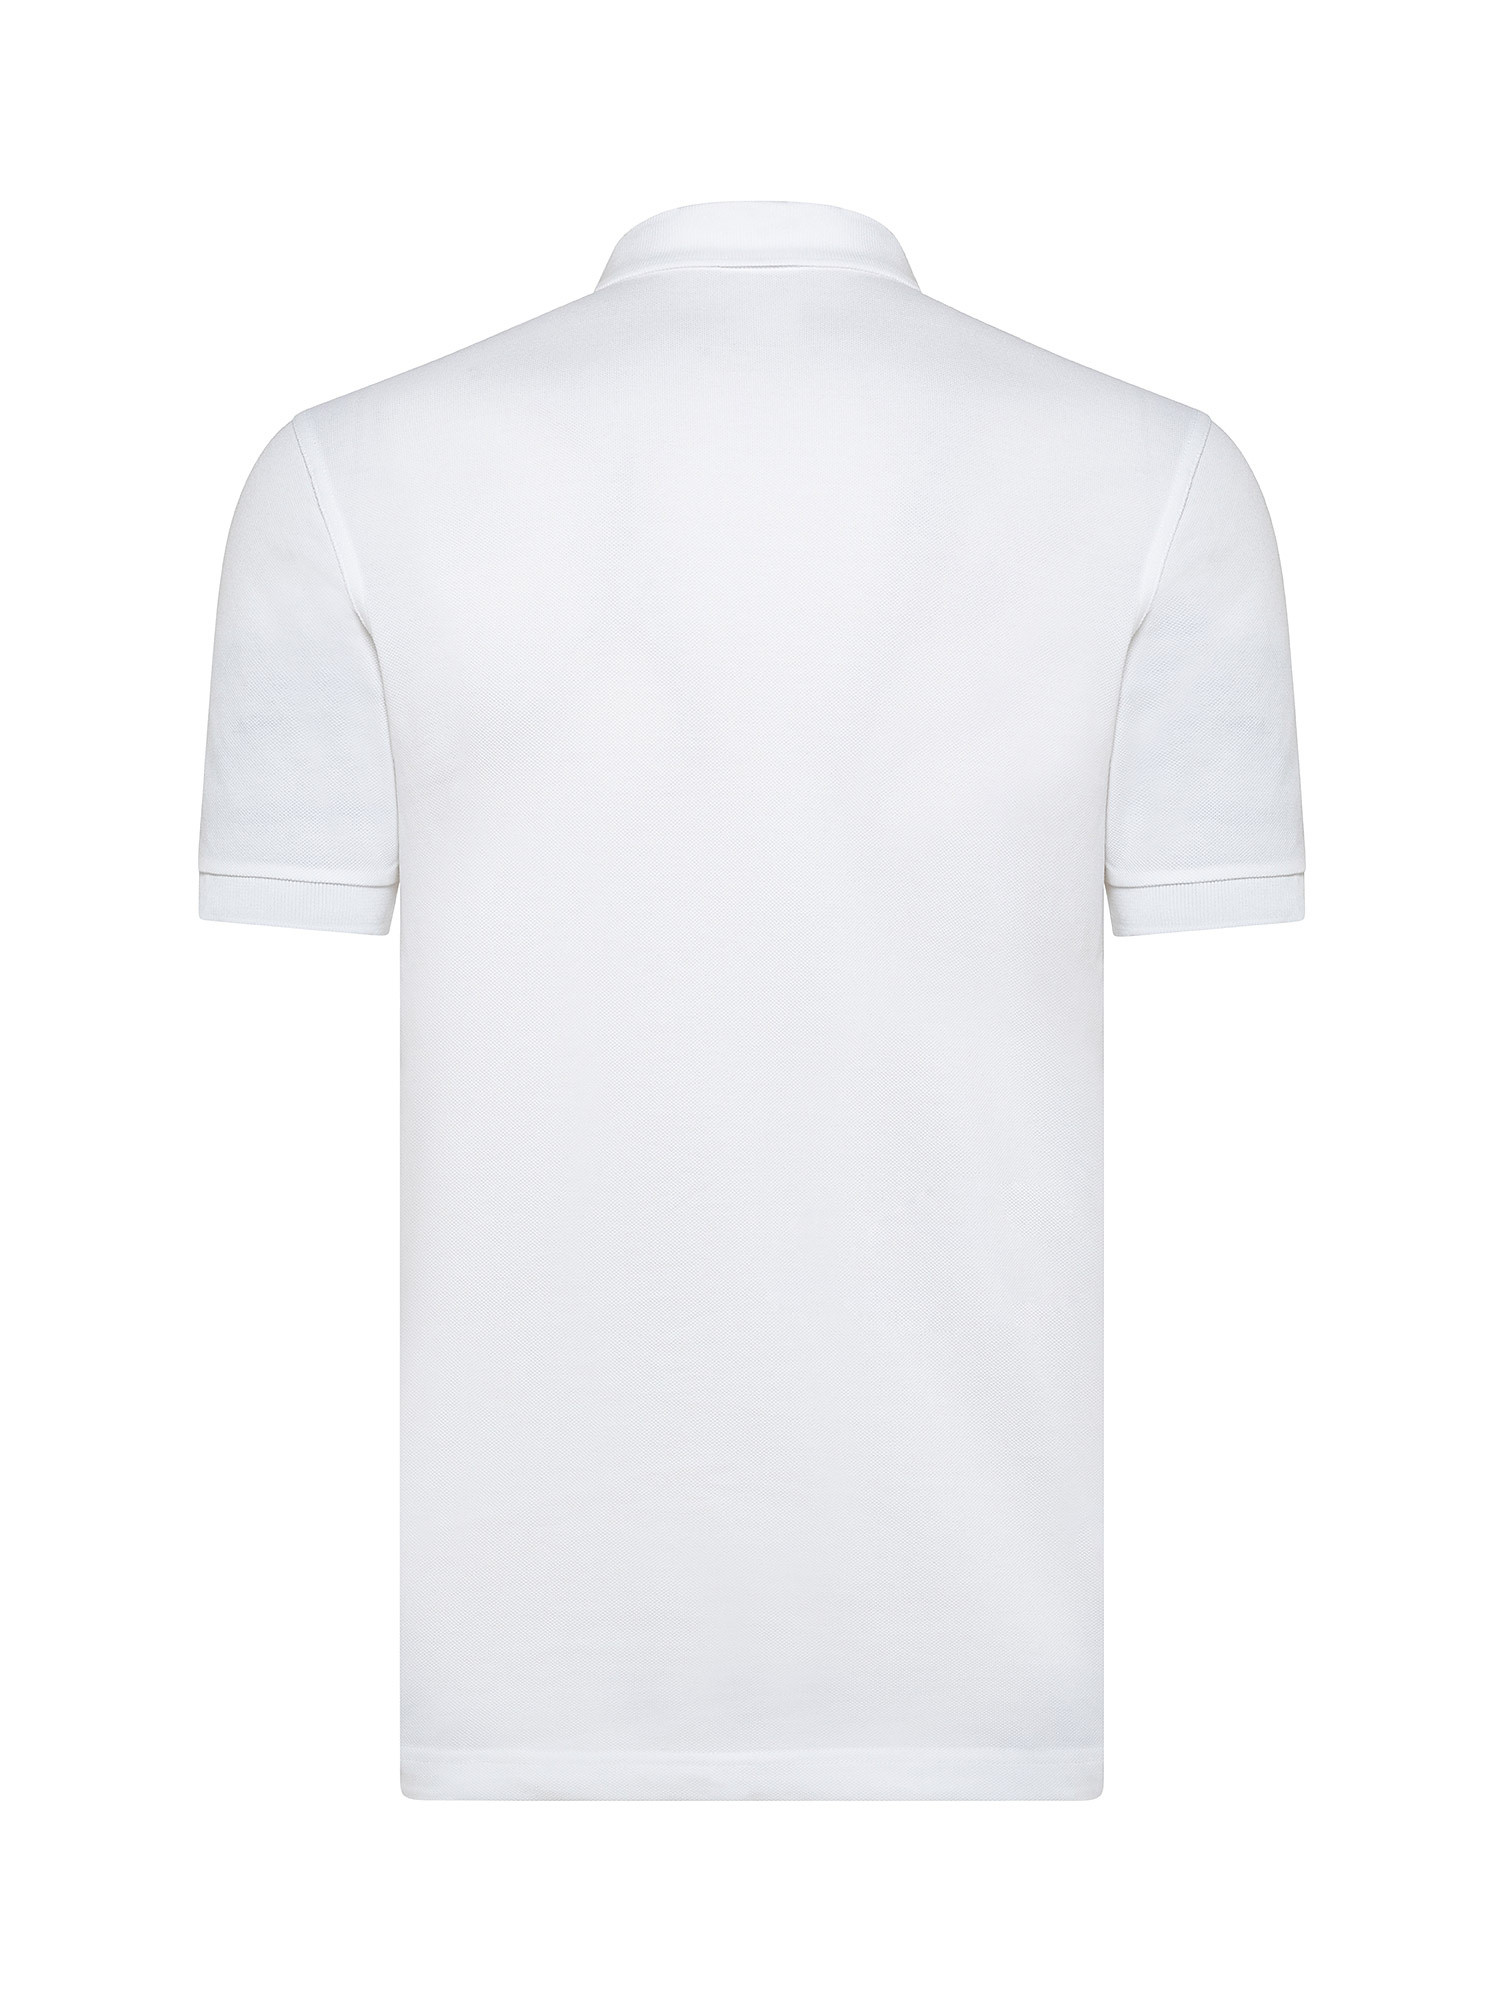 Plain shirt, White, large image number 1